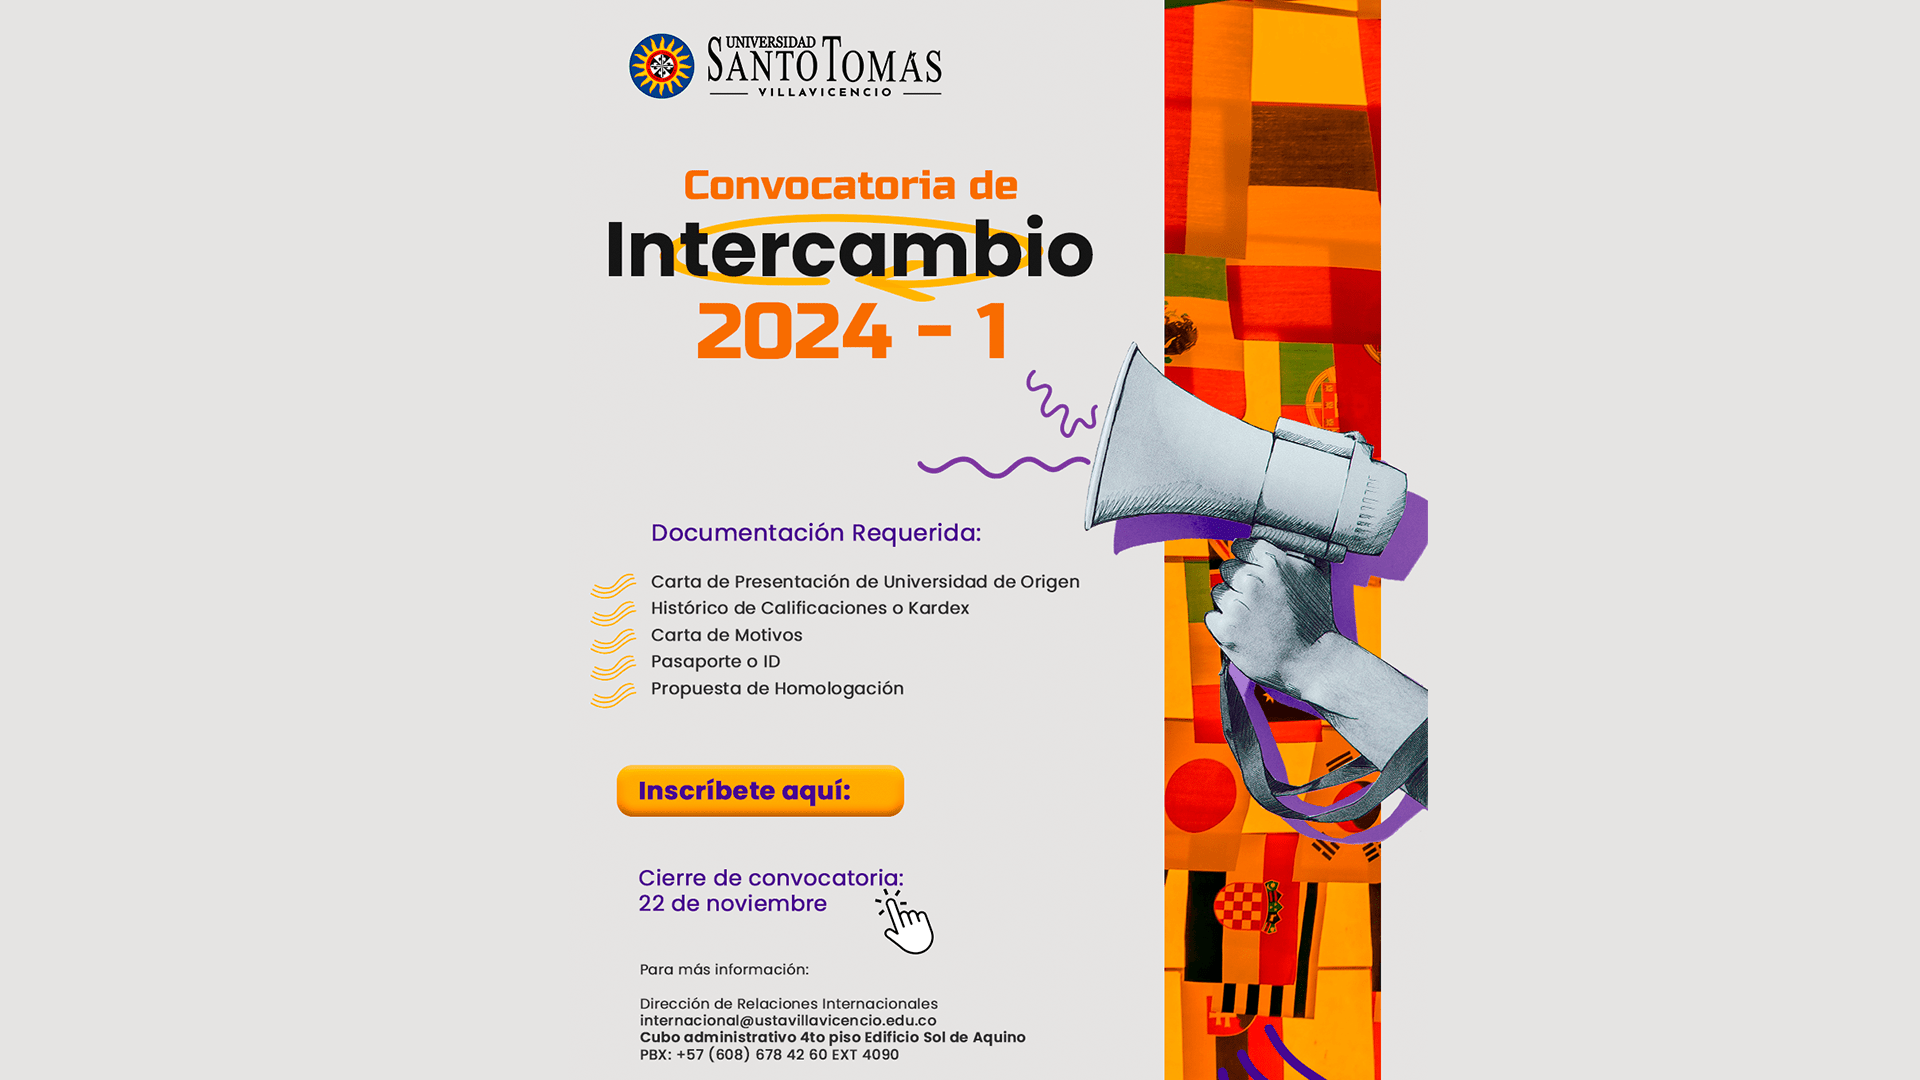 Convocatoria de intercambio 2024-1 de la Universidad Santo Tomás Villavicencio